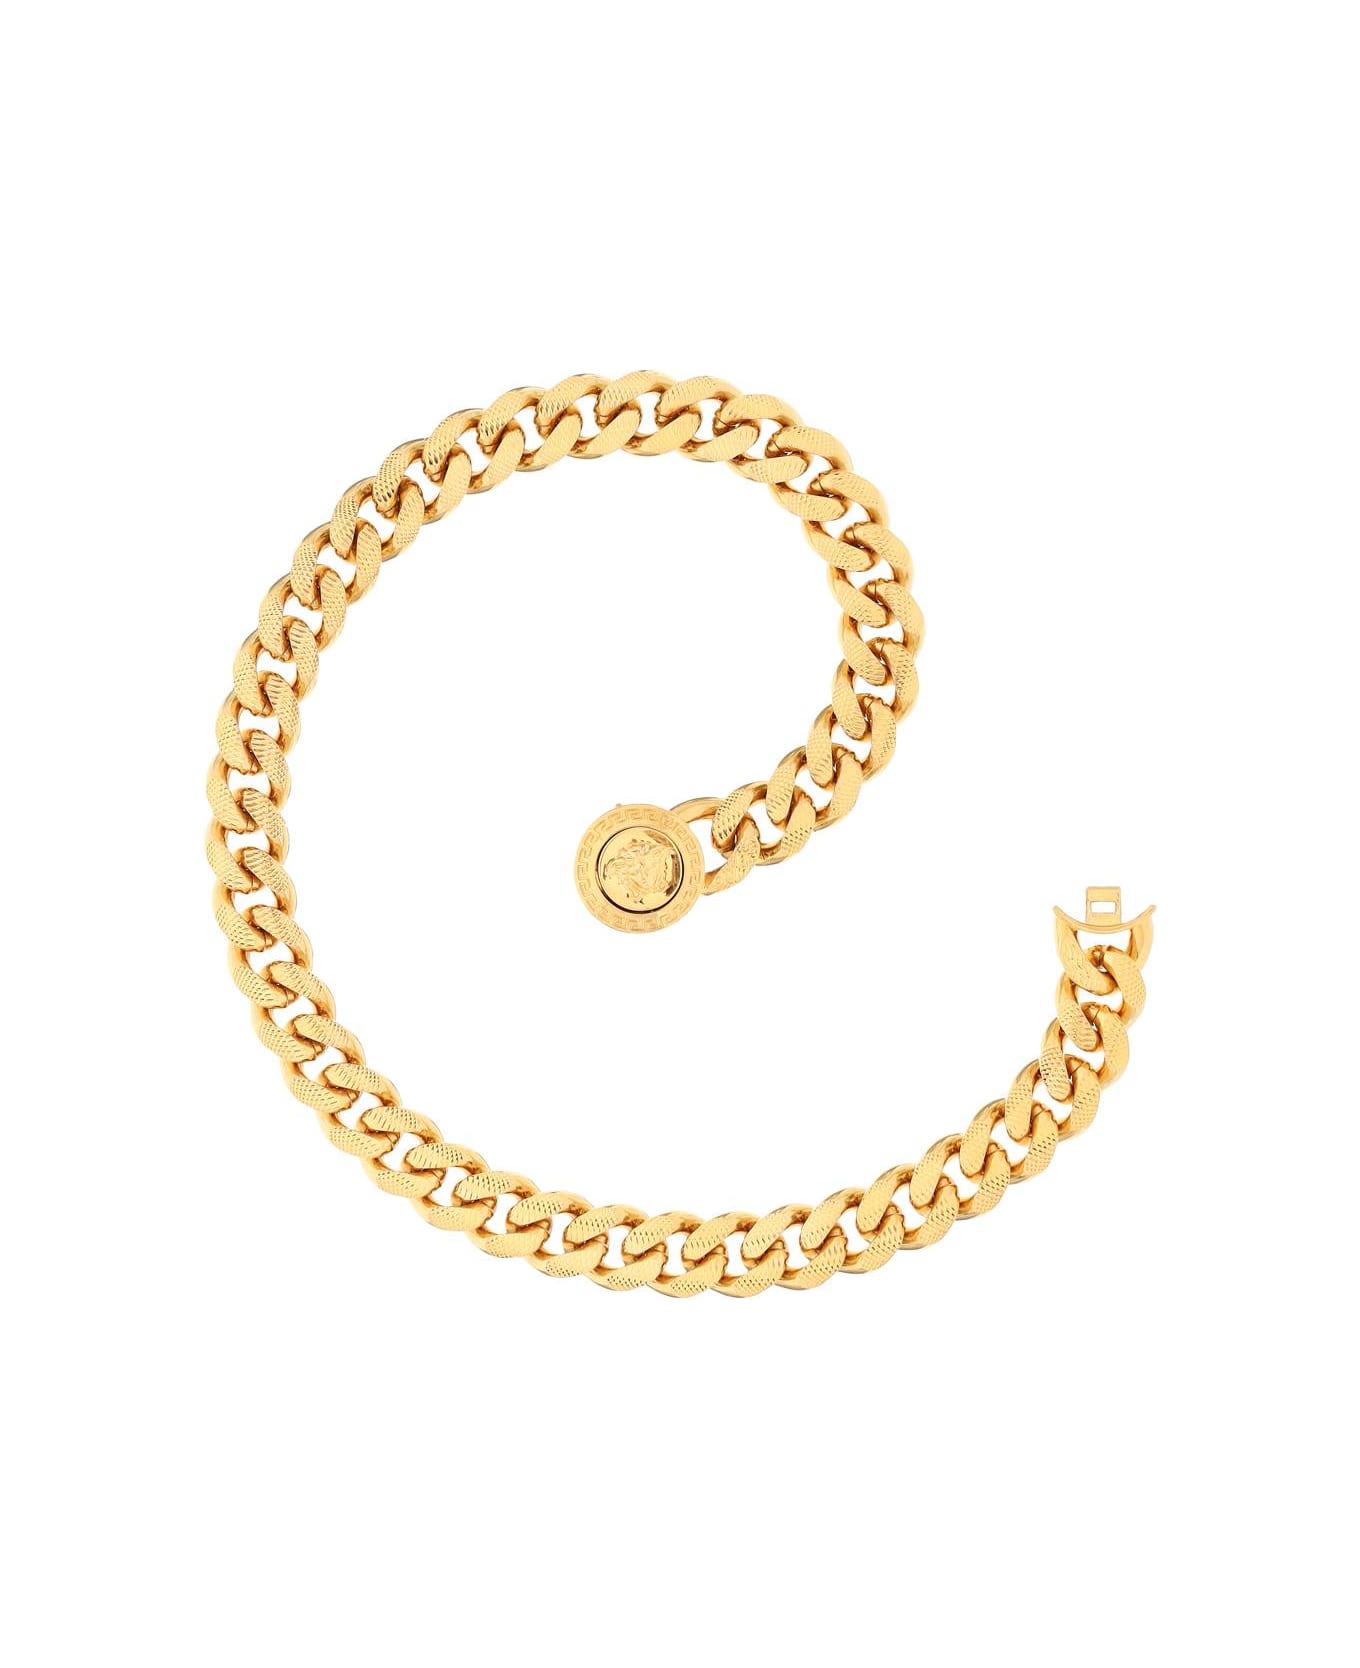 Versace Chain Medusa Necklace - Kot Tribute Gold